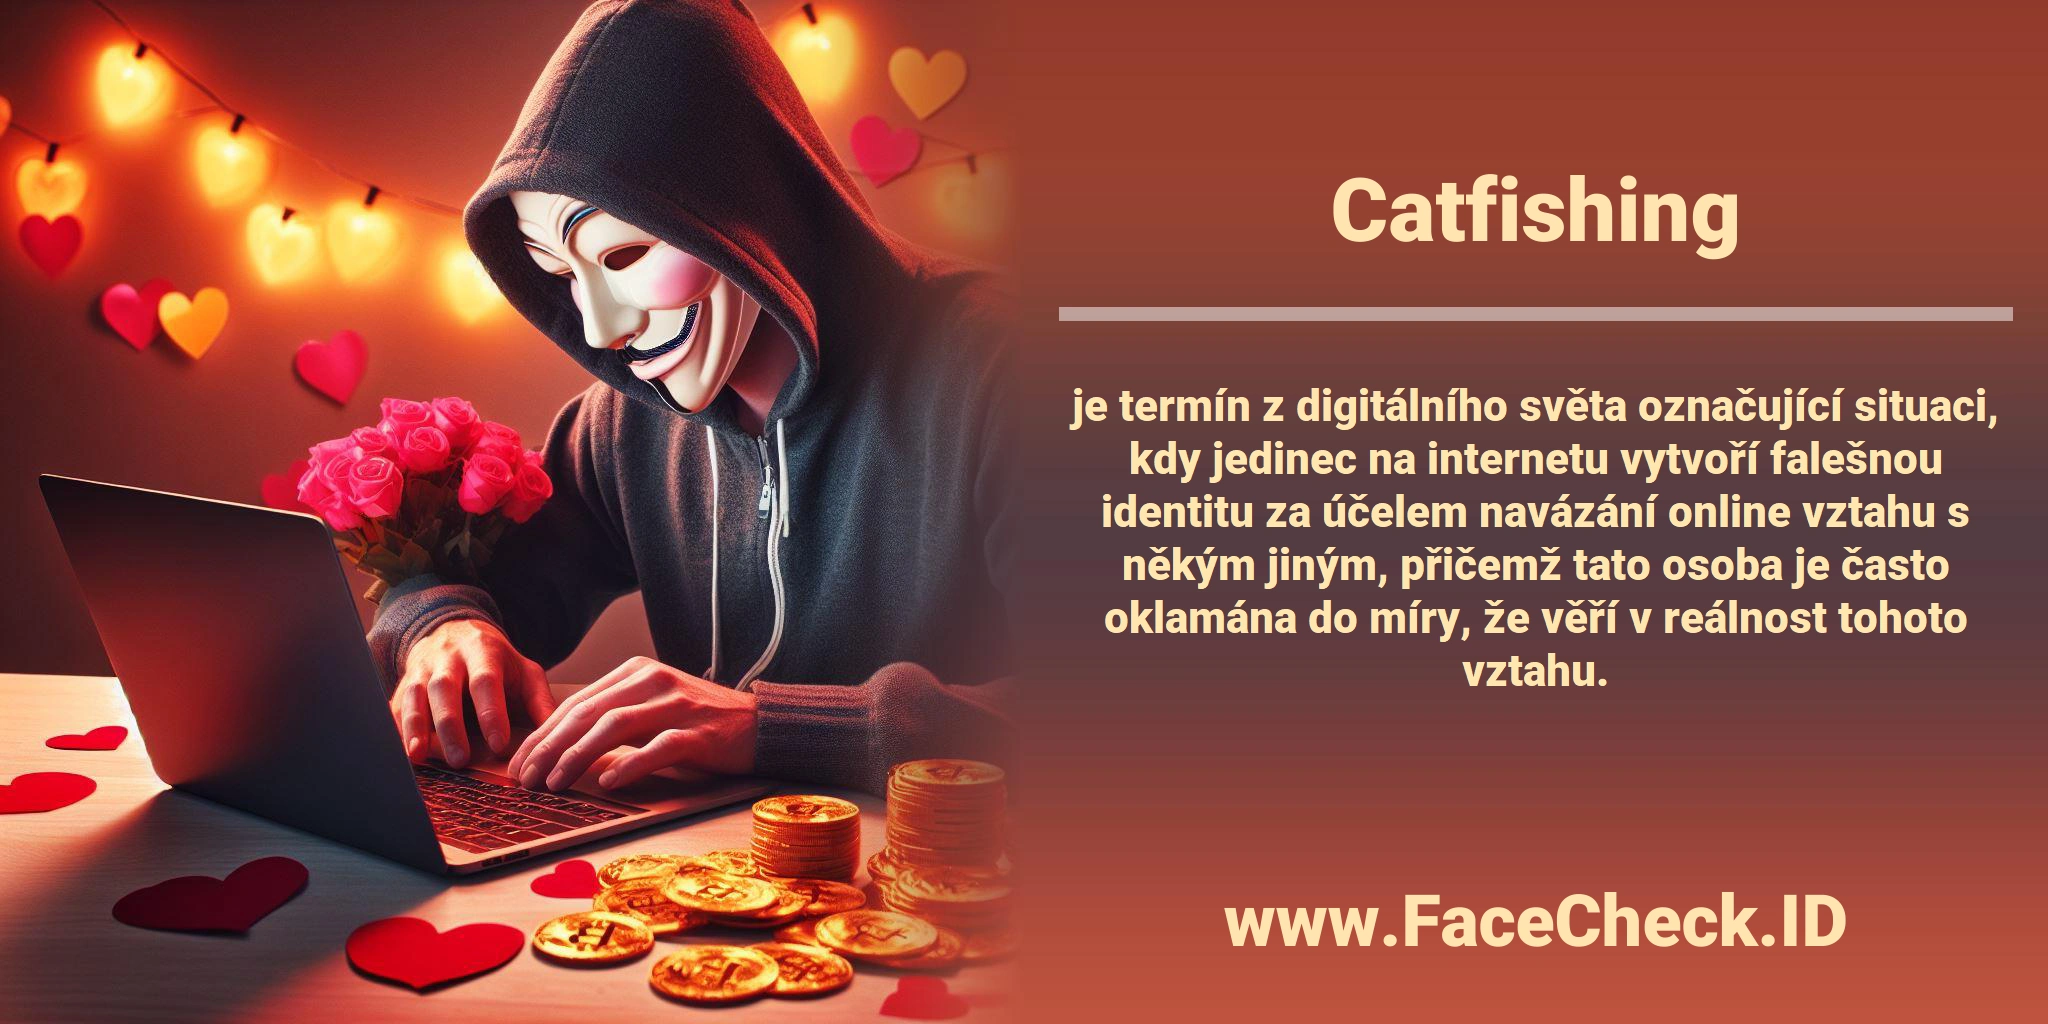 <b>Catfishing</b> je termín z digitálního světa označující situaci, kdy jedinec na internetu vytvoří falešnou identitu za účelem navázání online vztahu s někým jiným, přičemž tato osoba je často oklamána do míry, že věří v reálnost tohoto vztahu.